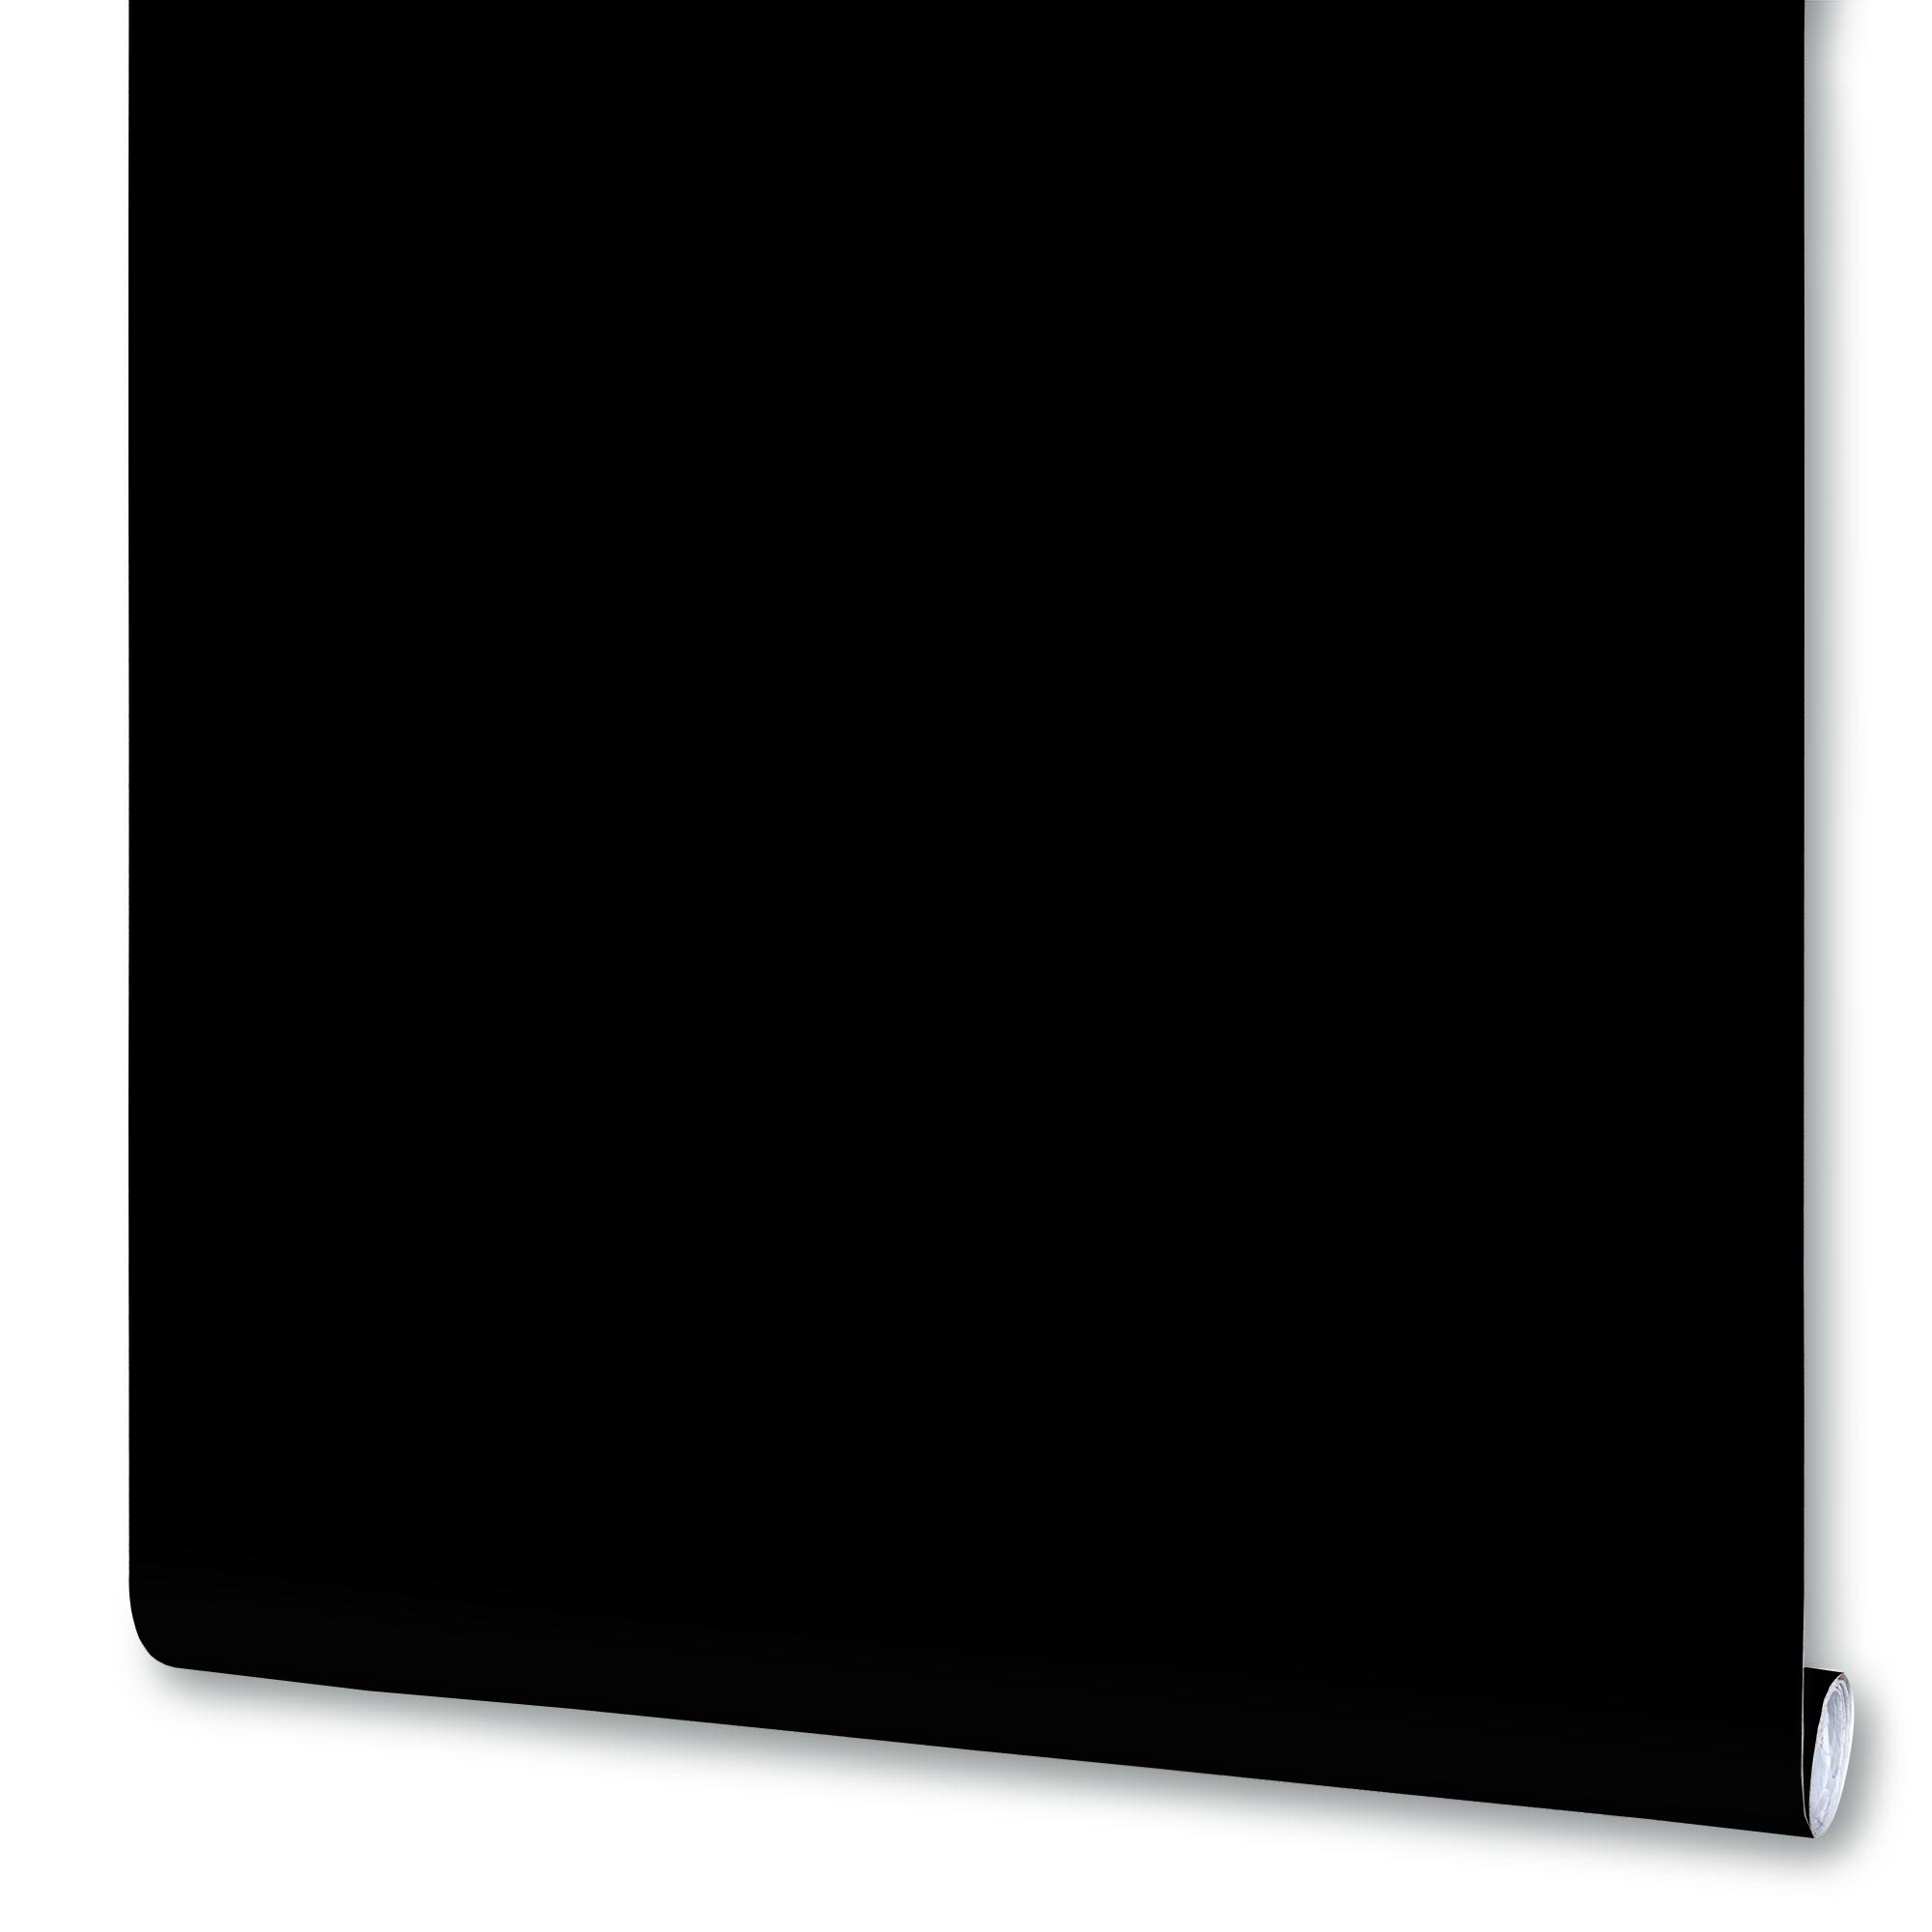 Плёнка Deluxe самоклеящаяся, 0,45x2 м, чёрная, глянцевая, 7016В, 1 рулон плёнка deluxe самоклеящаяся 0 45x2 м чёрная глянцевая 7016в 1 рулон